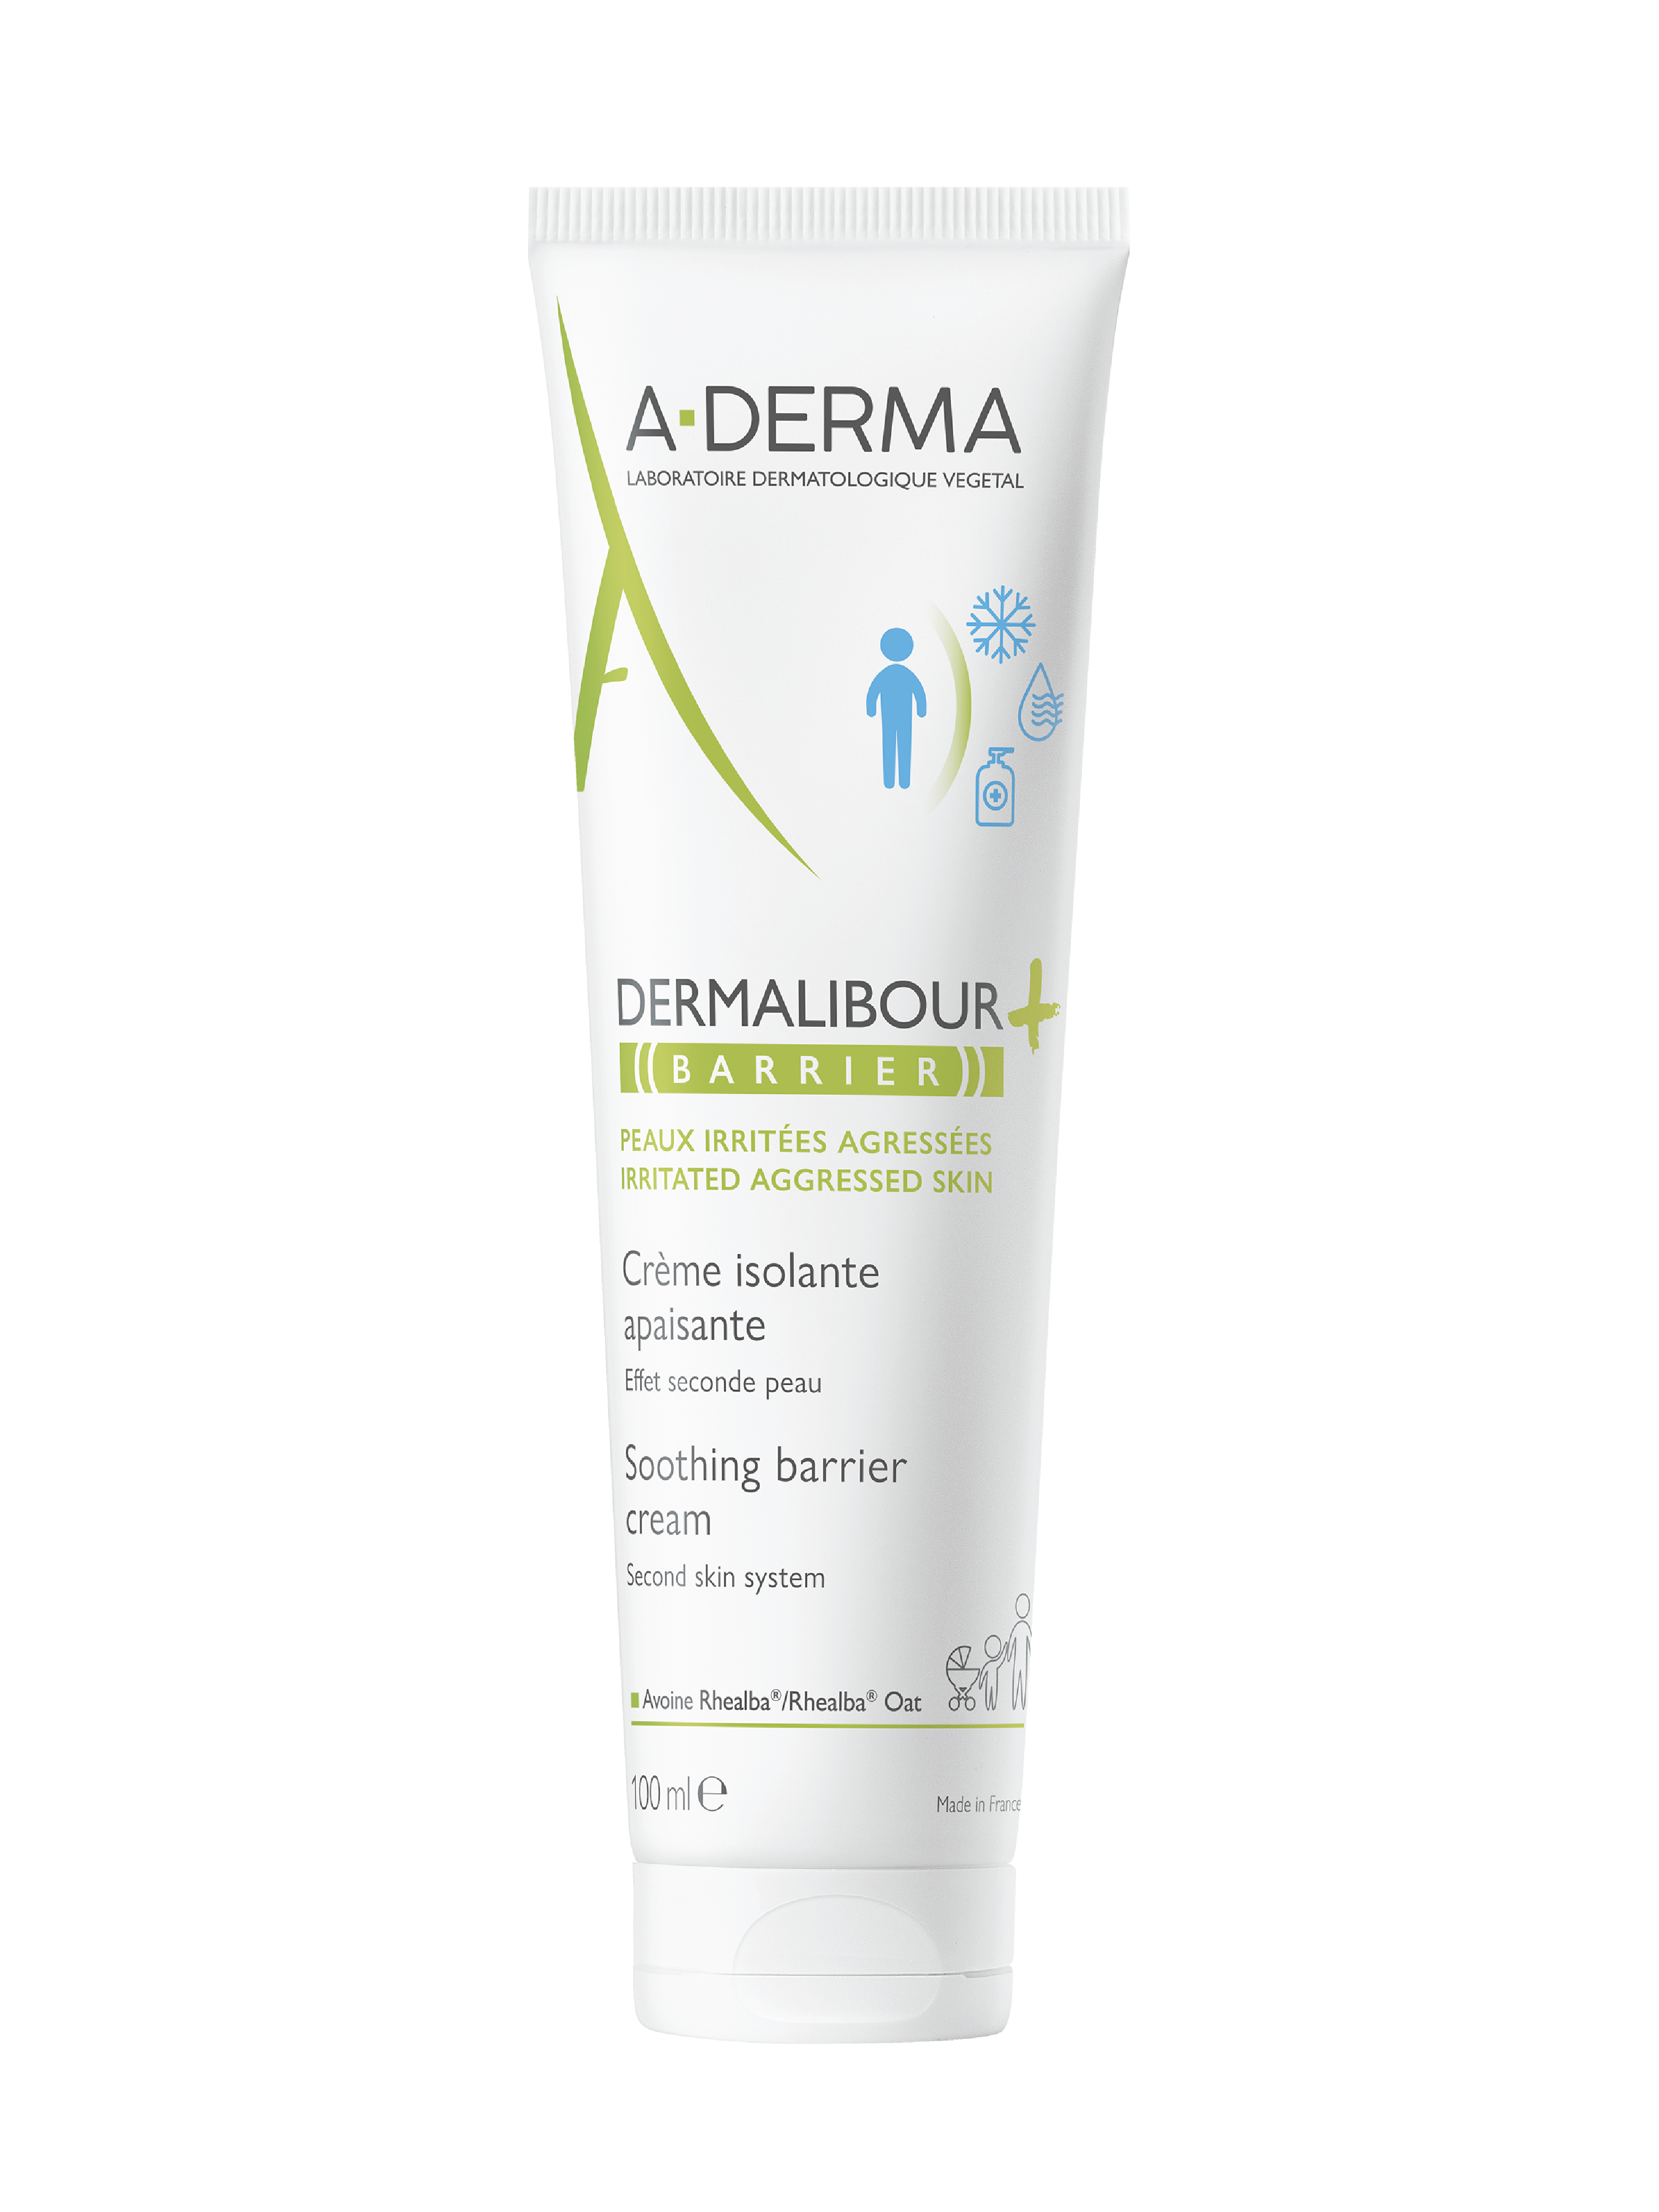 A-Derma Dermalibour+ Barrier Cream, 100 ml